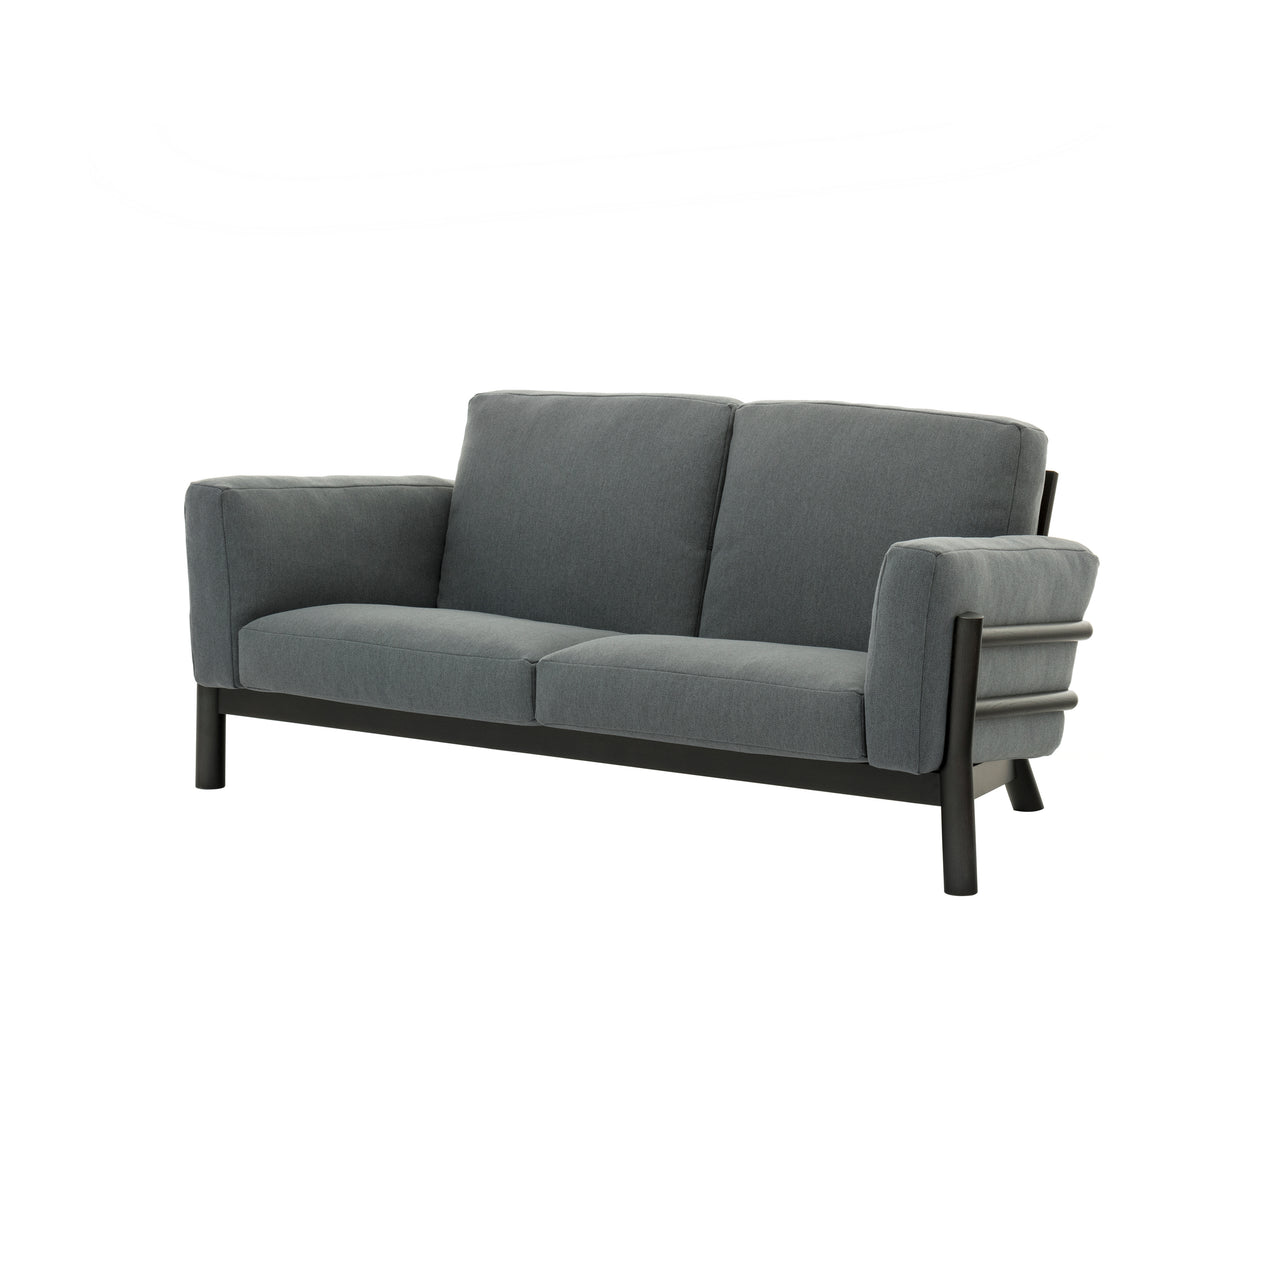 Castor Sofa 2 Seater: Black Oak